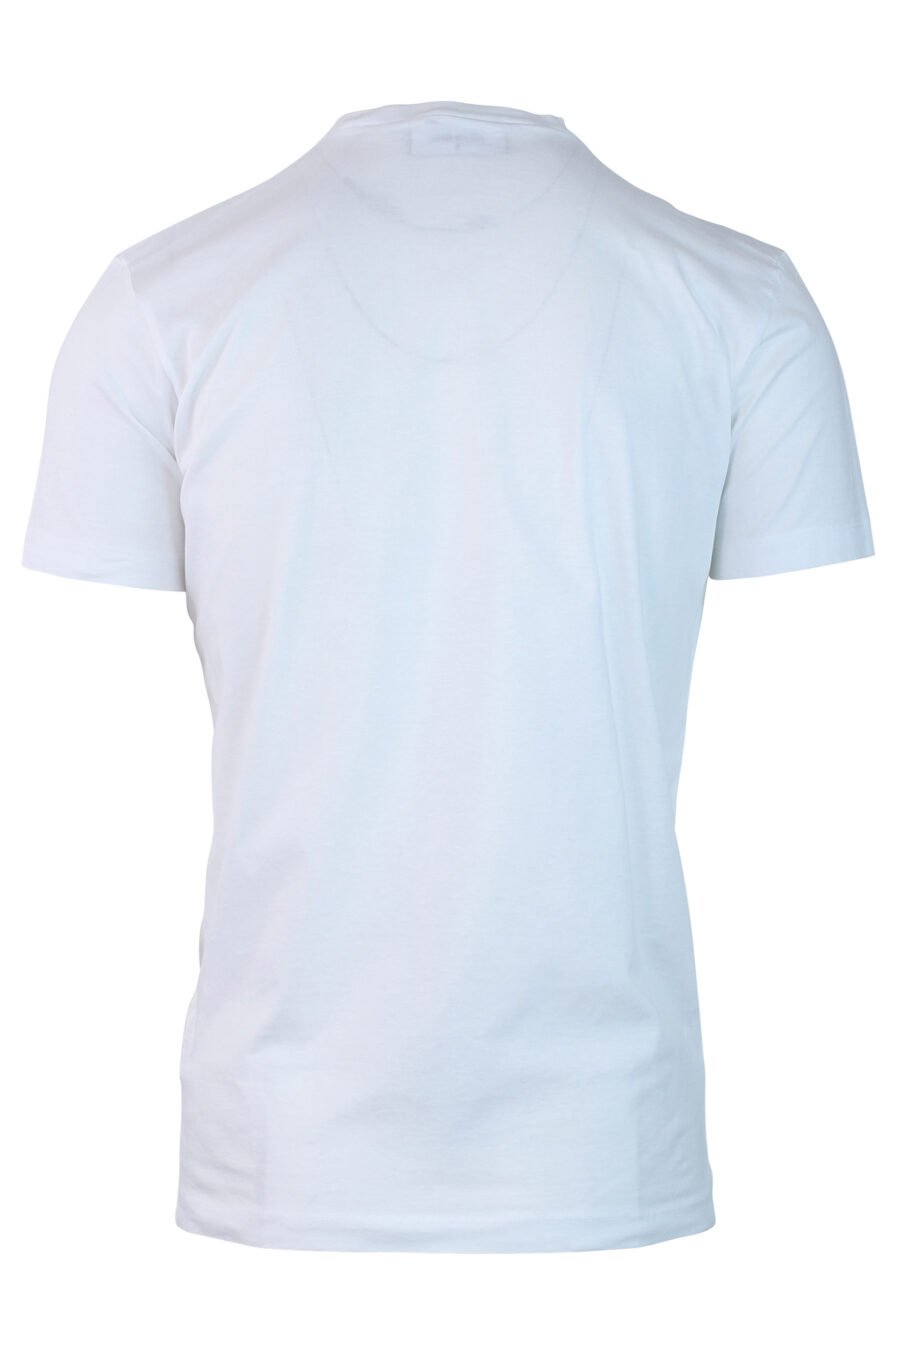 T-shirt branca com "ícone" minilogue - IMG 0722